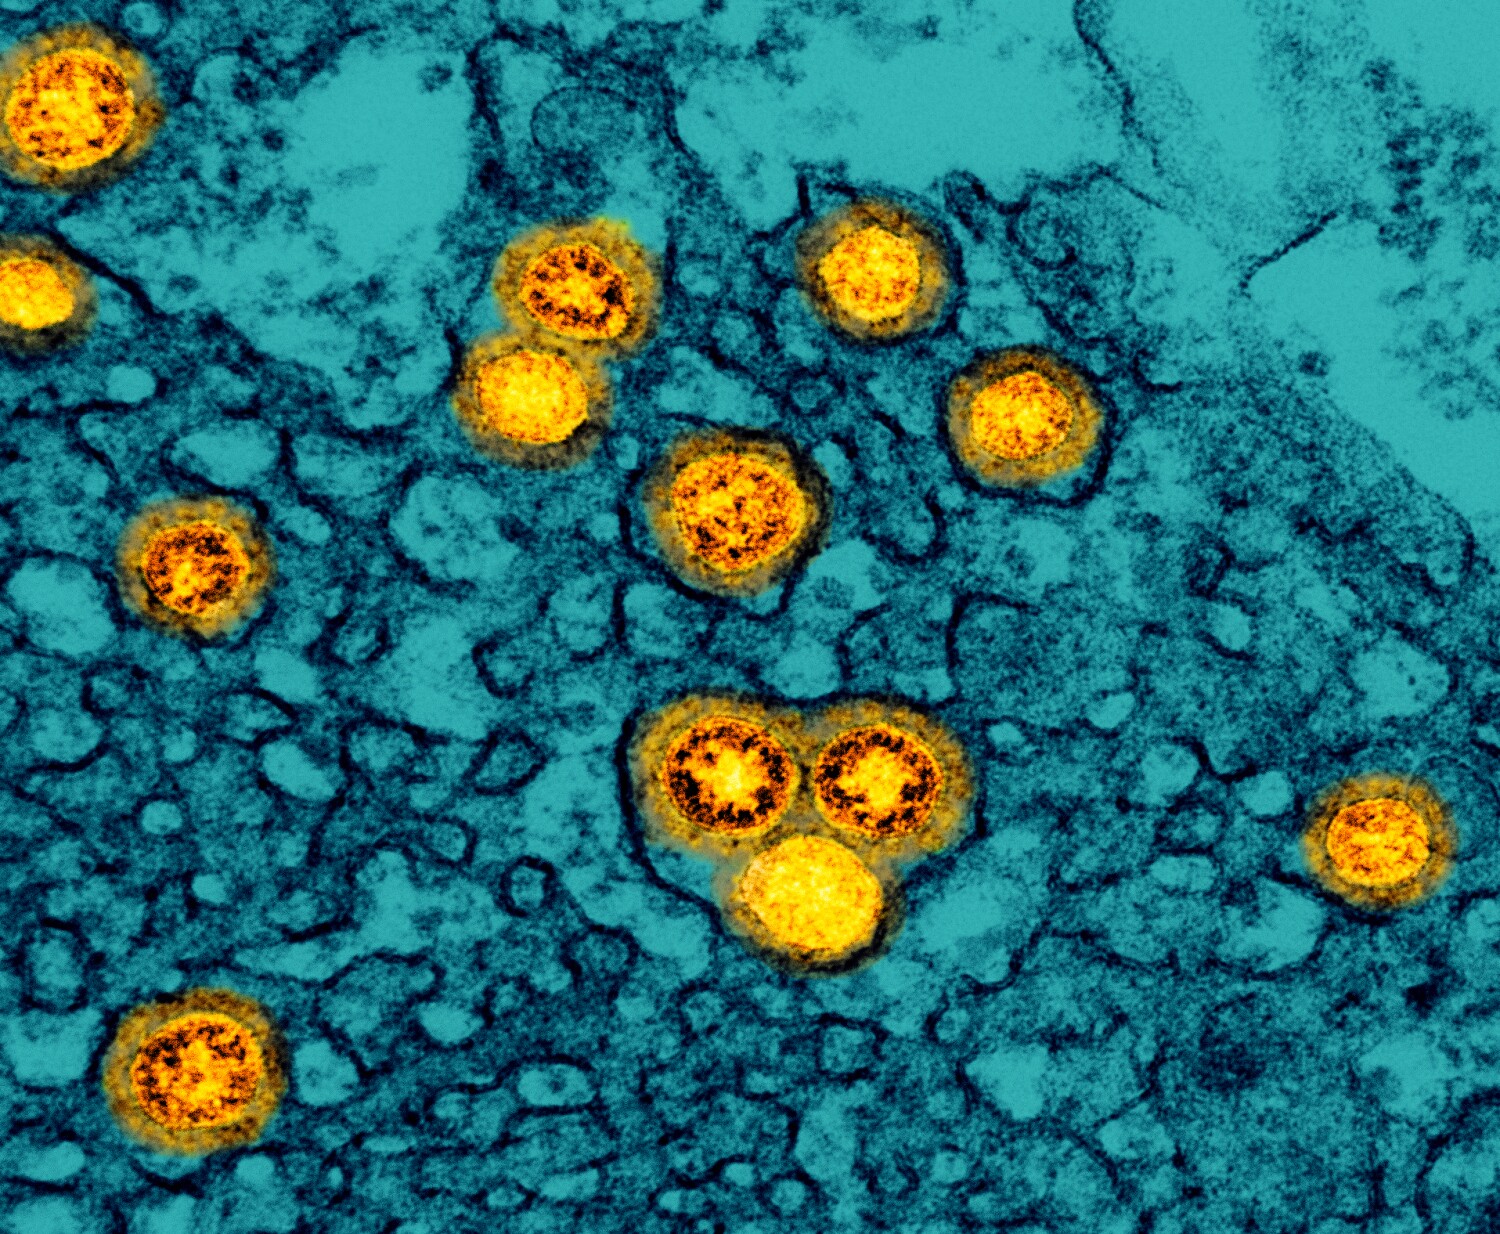 Omicron daha hafif koronavirüs olarak görülüyor ancak bilim adamları emin değil